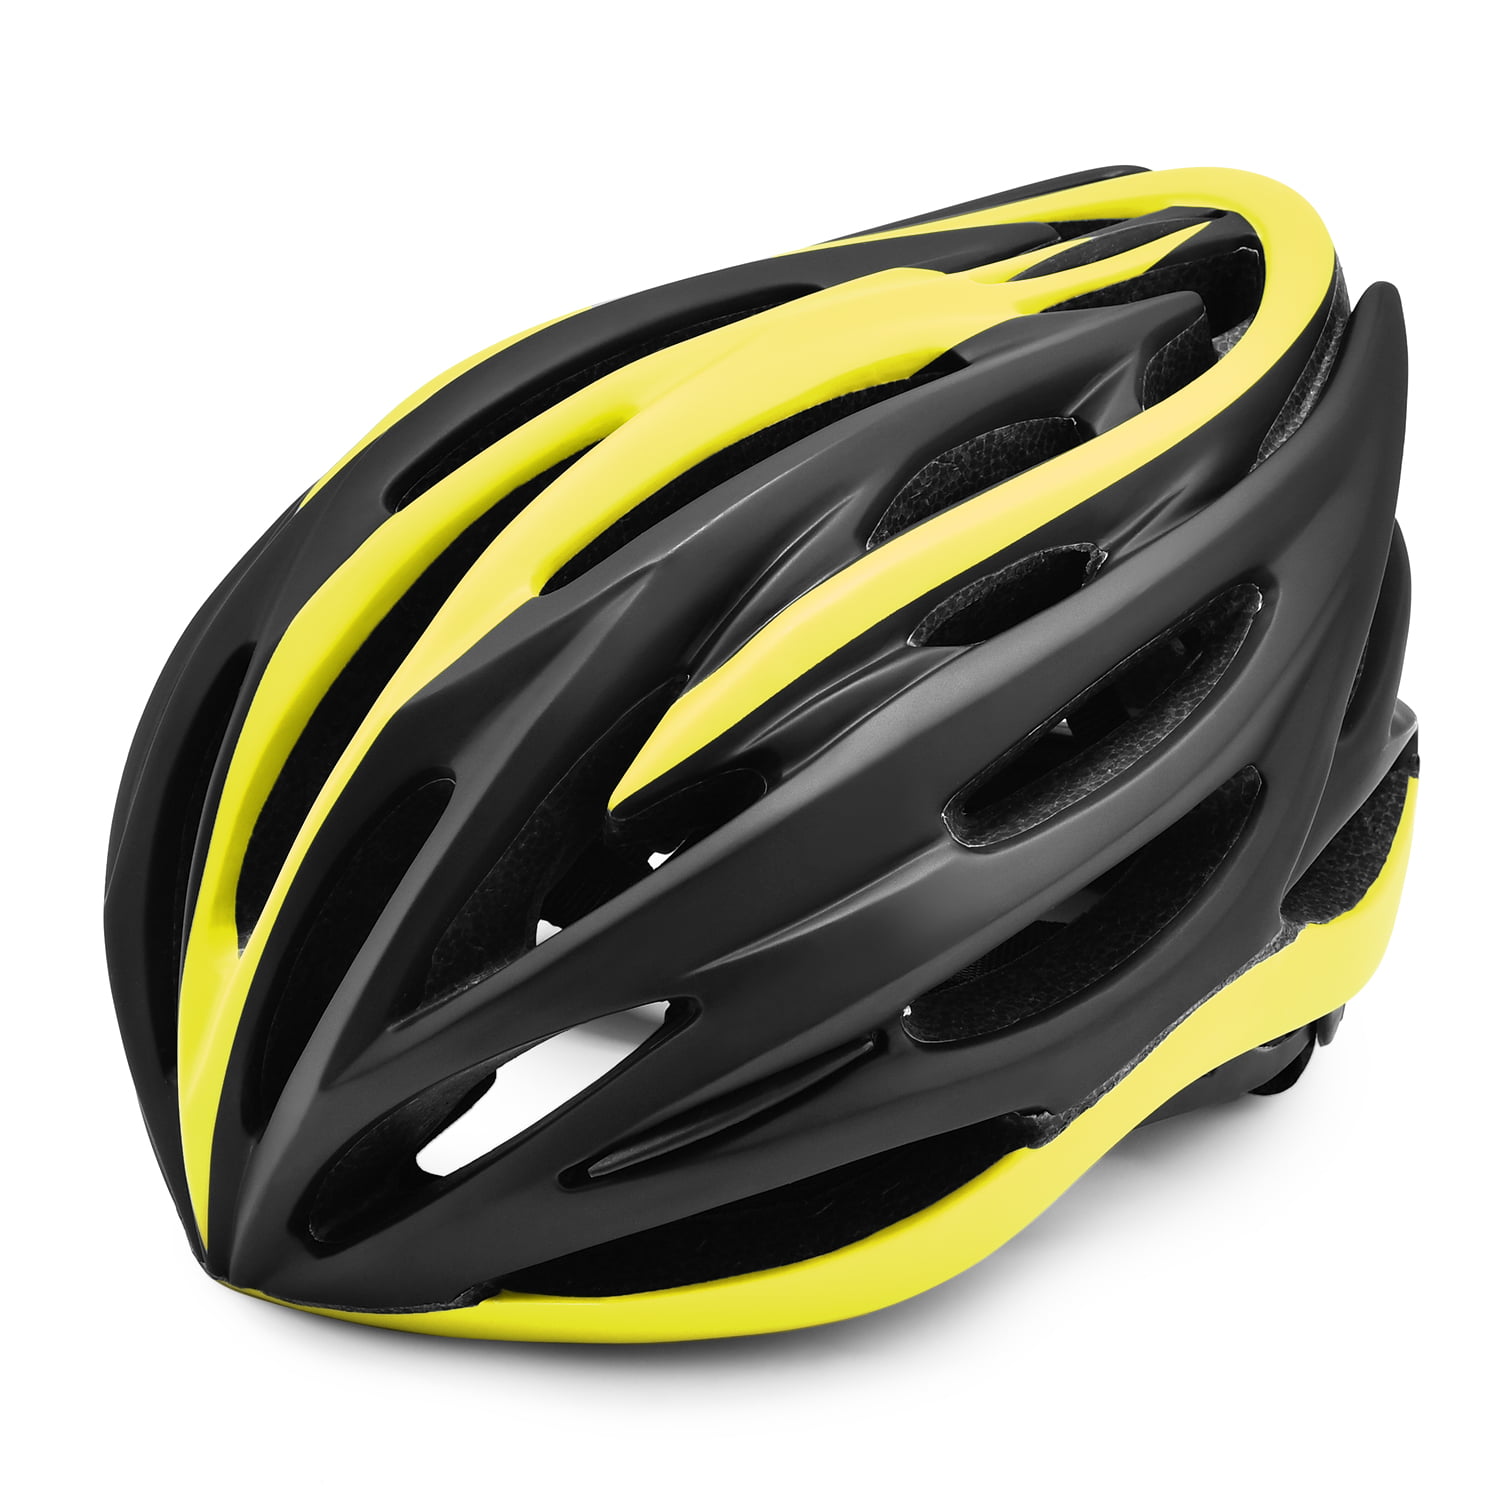 Black Details about   Stylish Adult Road Bike Helmet Protector Adjustable 